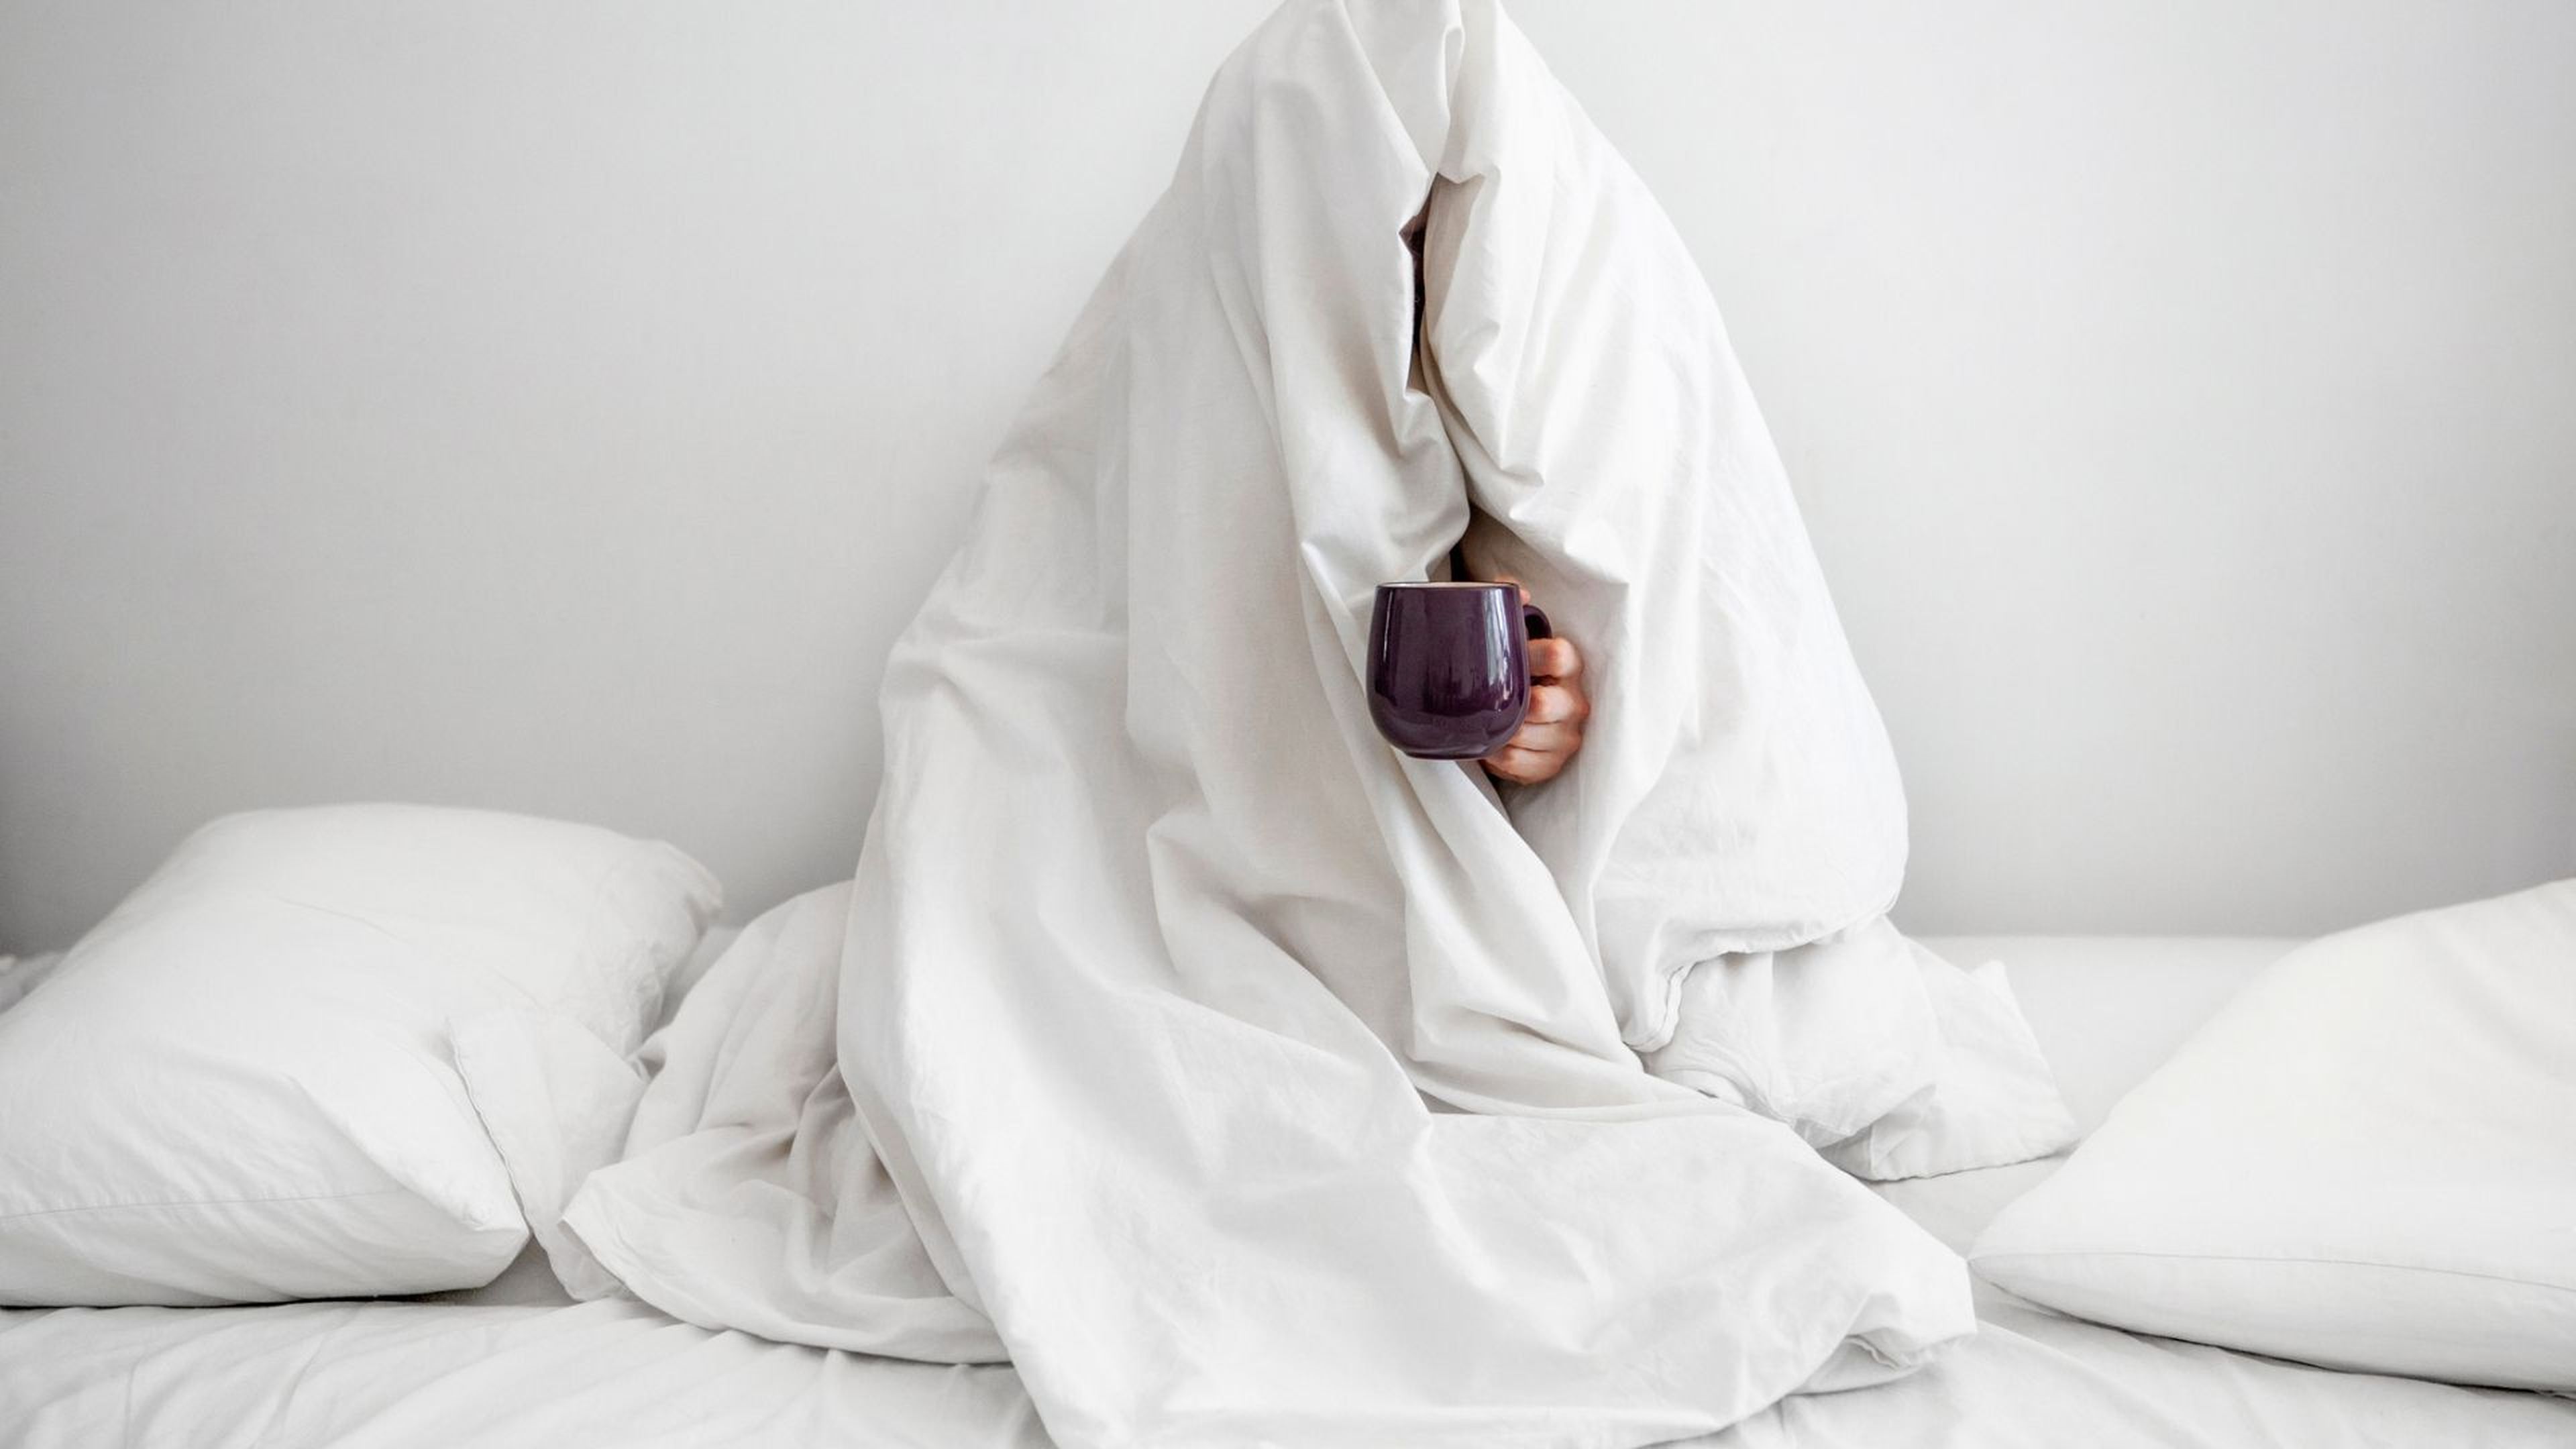 Una persona tapada de arriba a abajo, sentada en la cama y con una taza de café caliente.